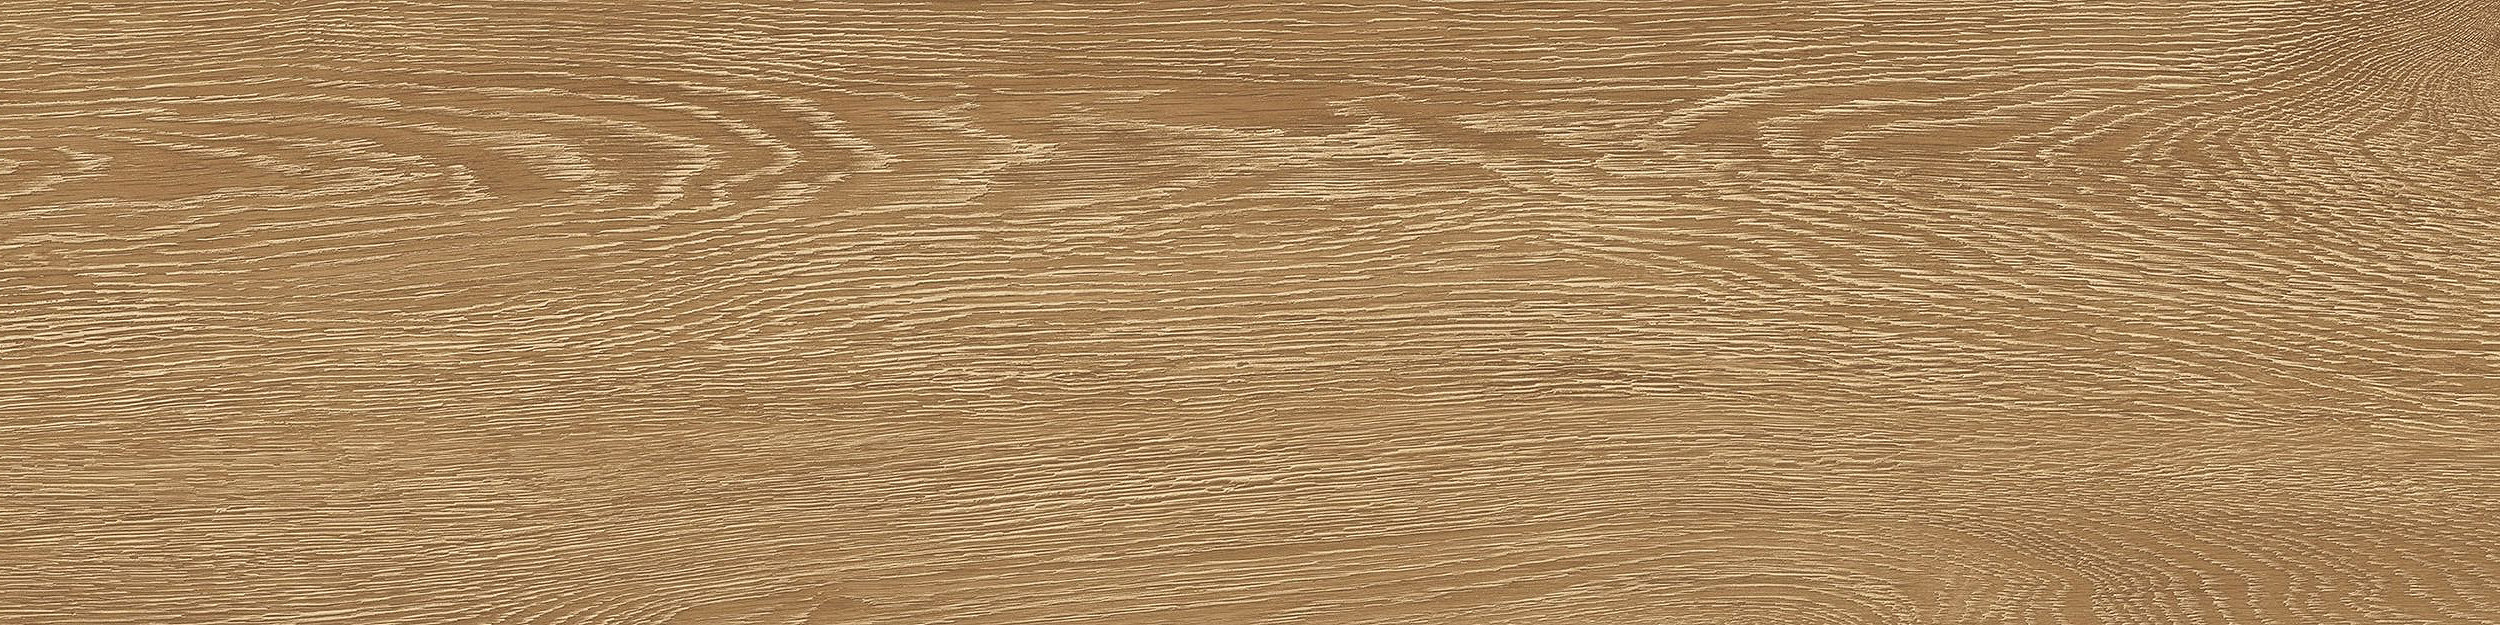 Textured Woodgrains LVT In Antique Oak image number 11